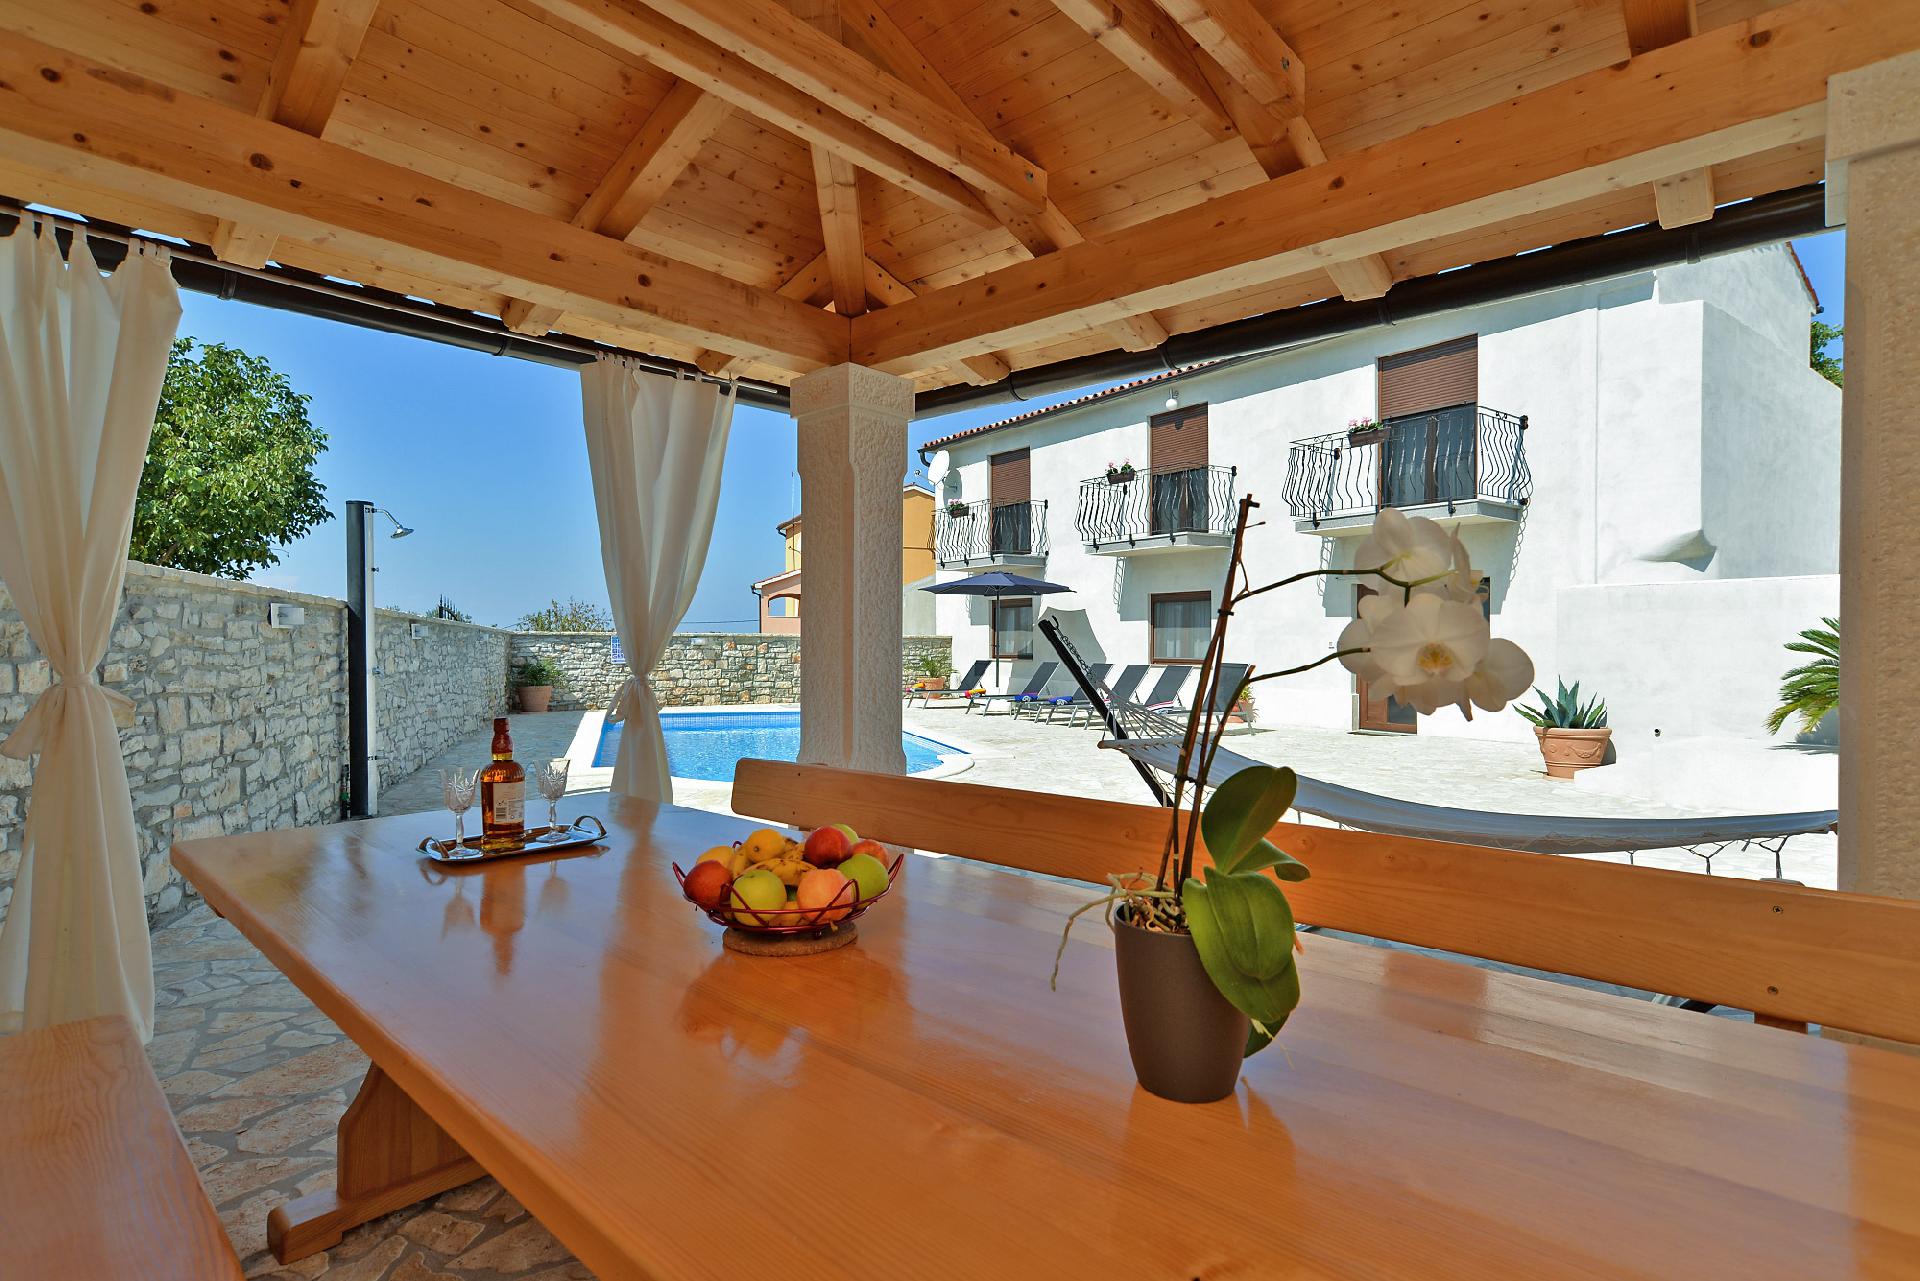 Ferienhaus mit Privatpool für 12 Personen ca.  in Kroatien